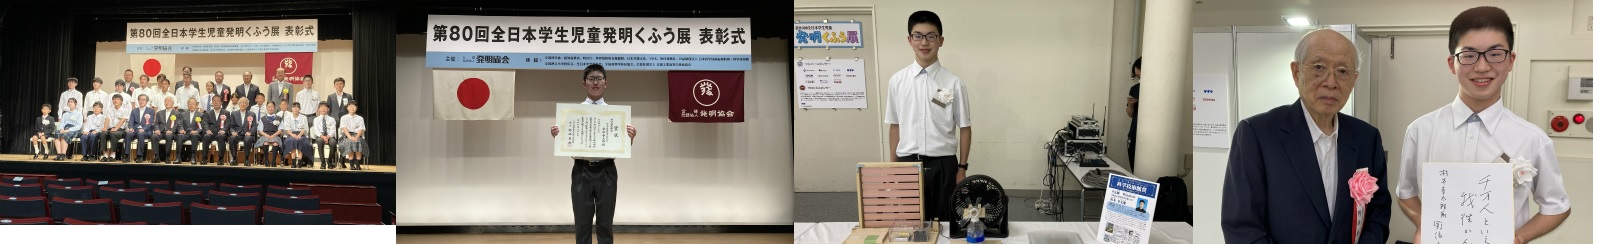 「全日本学生児童発明くふう展」科学技術館賞を受賞